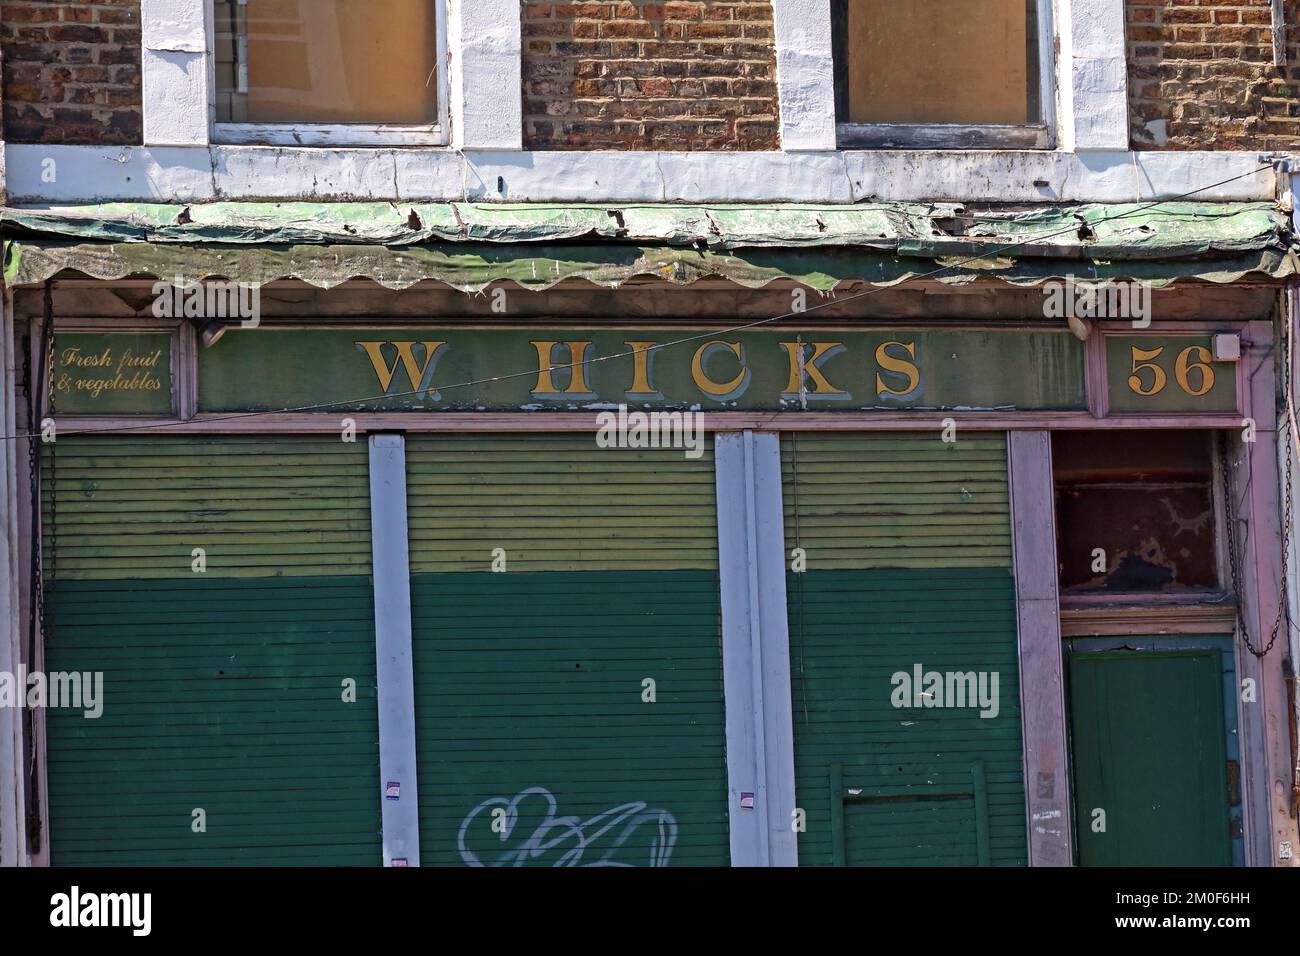 W.Hicks, ancienne boutique de greengropers, fruits frais et légumes, au 56 Golborne Road, Notting Hill, RBKC, Londres, Angleterre, ROYAUME-UNI, W10 5PR Banque D'Images